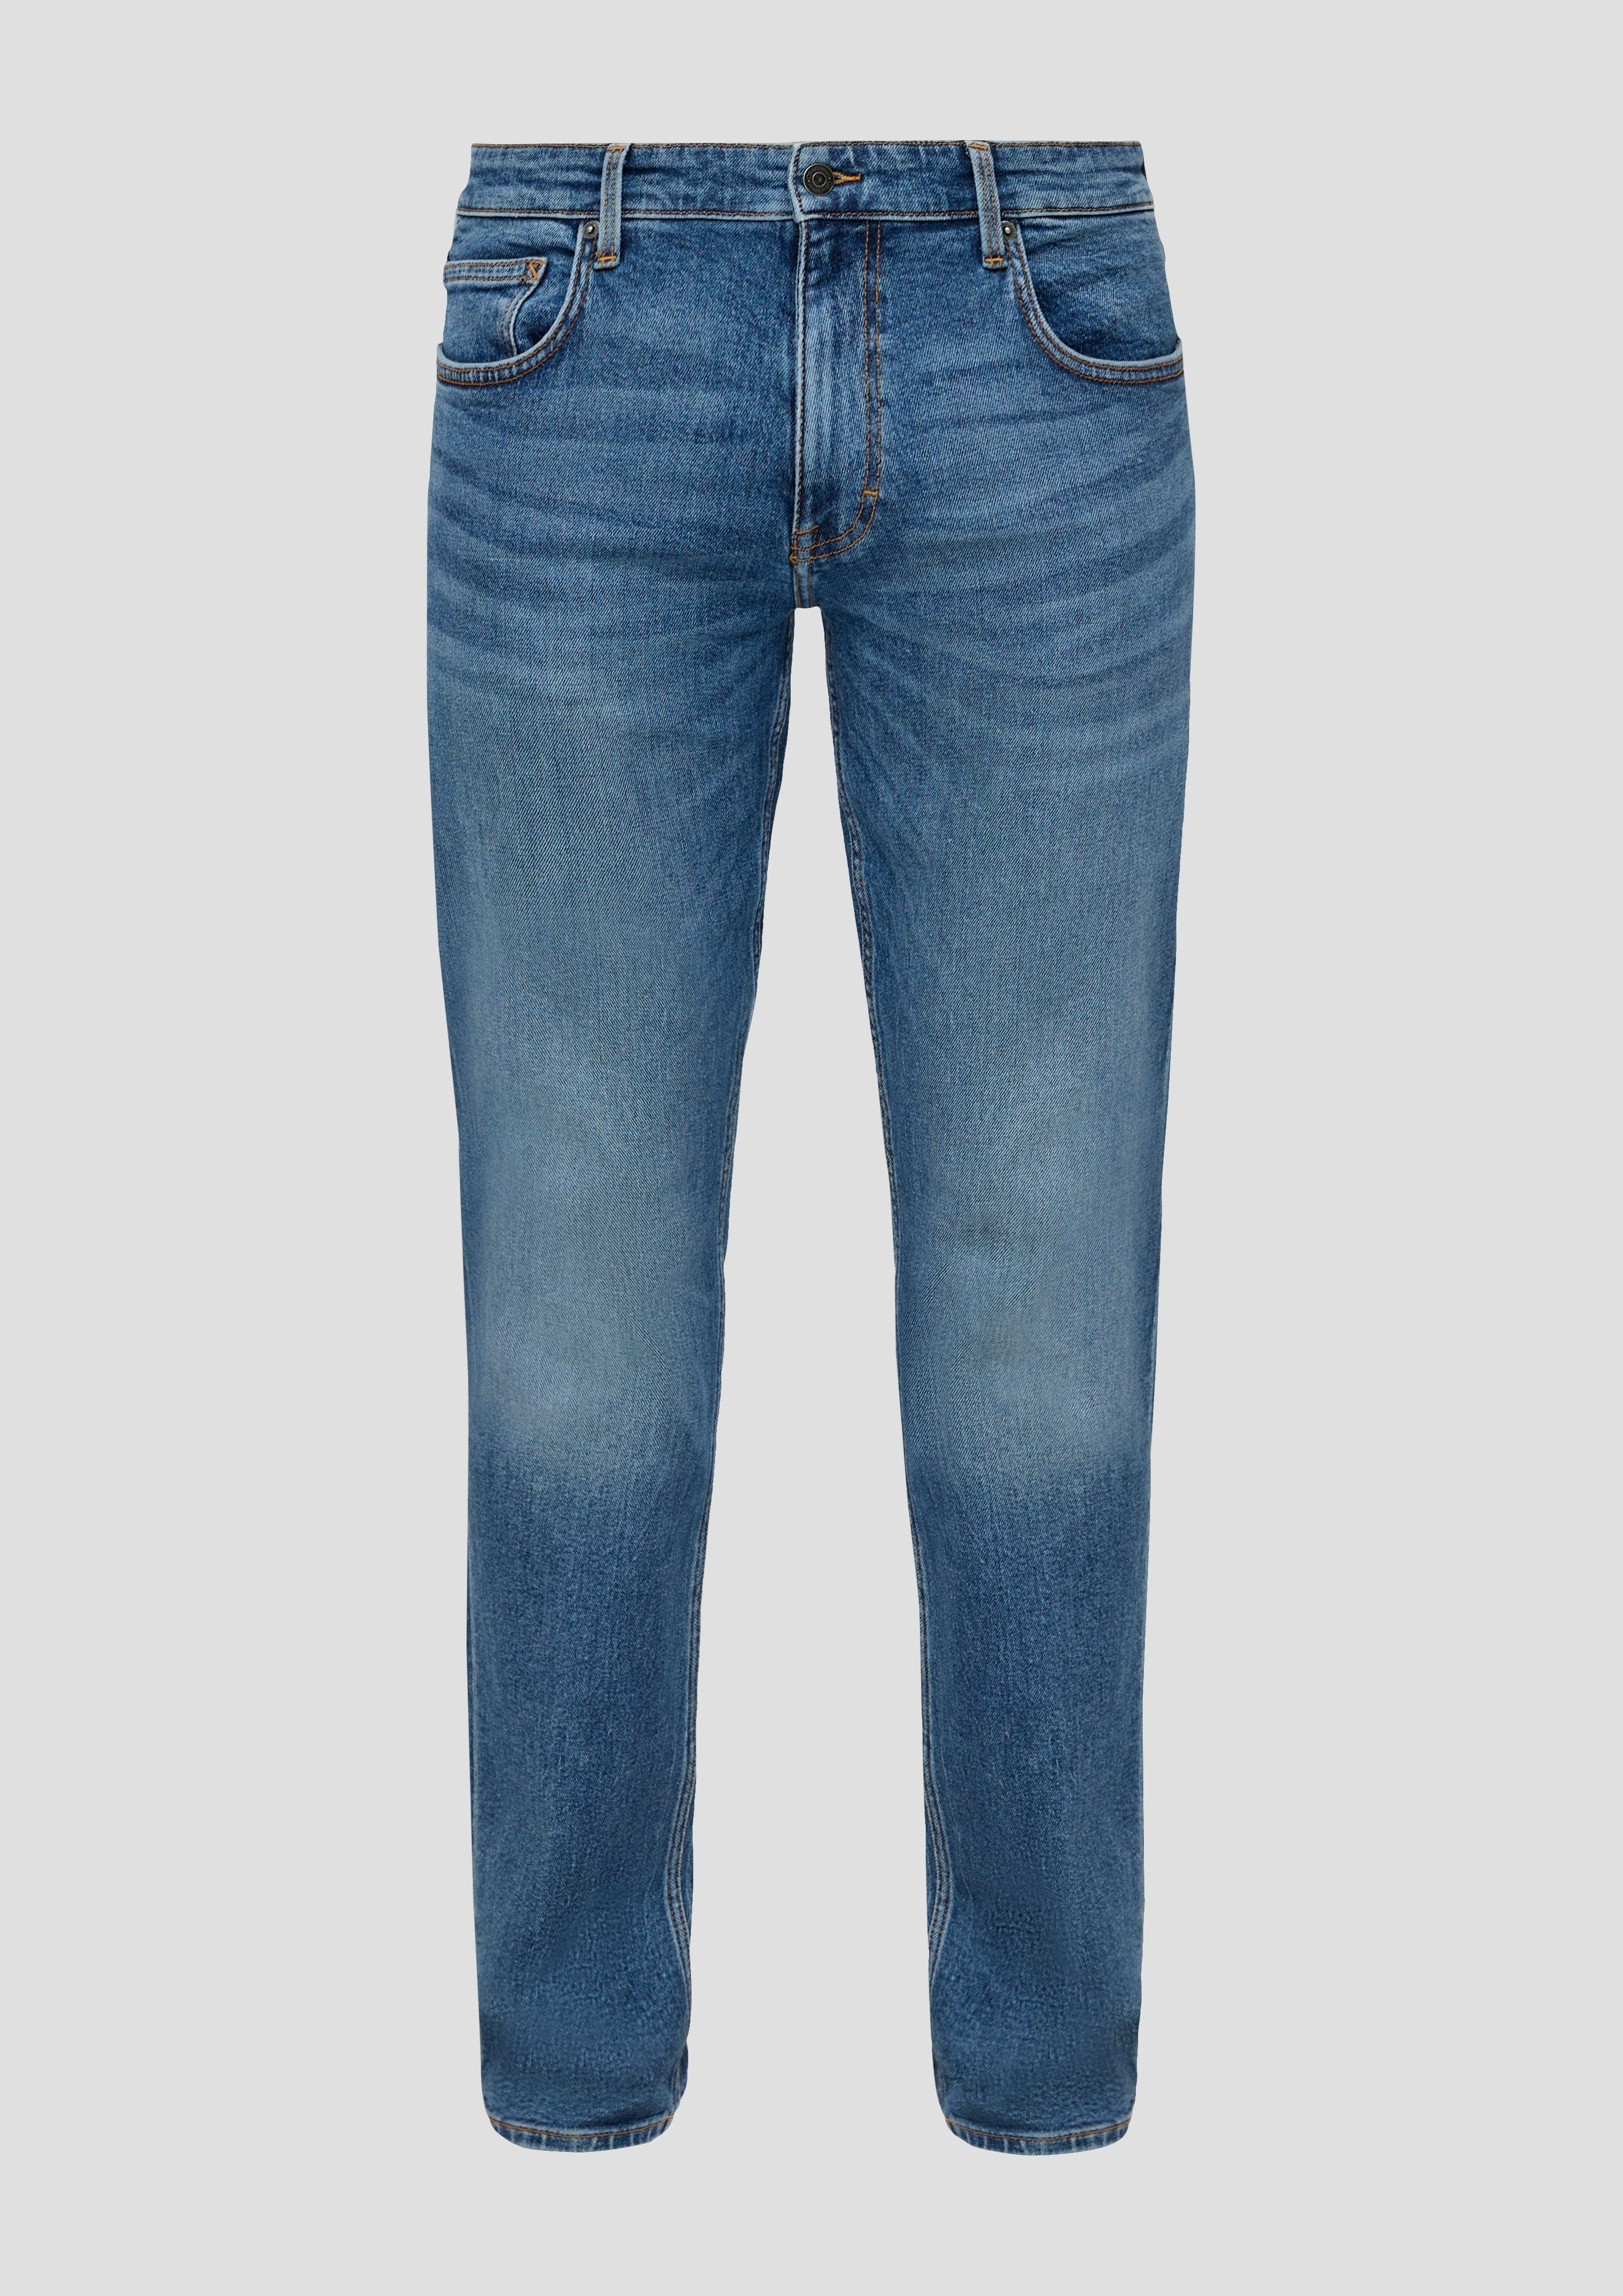 blue Jeans Bequeme 32 an Nahtdesign den mit Gesäßtaschen QS